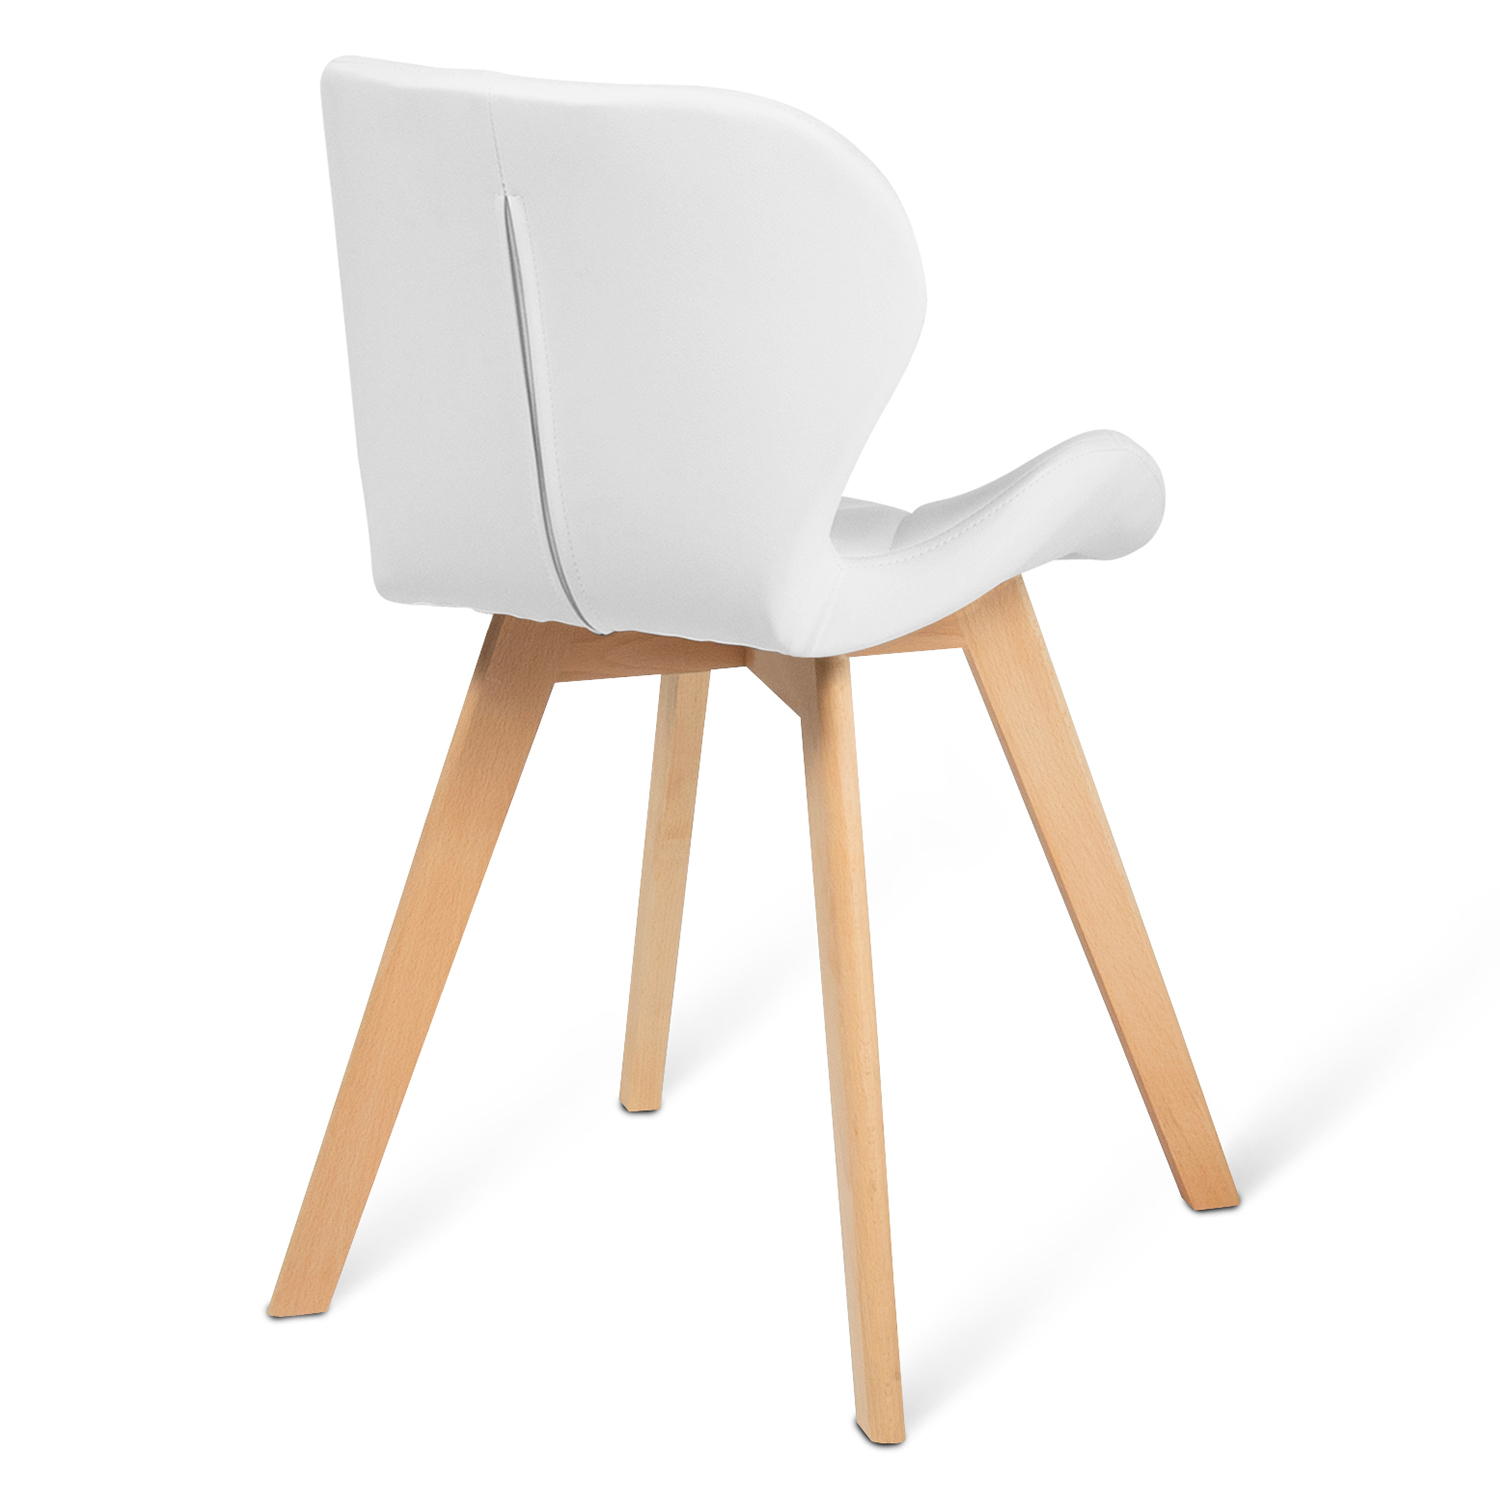 Carrefour - ALTEA - Chaise de jardin - Blanc - 862678 - Chaises de